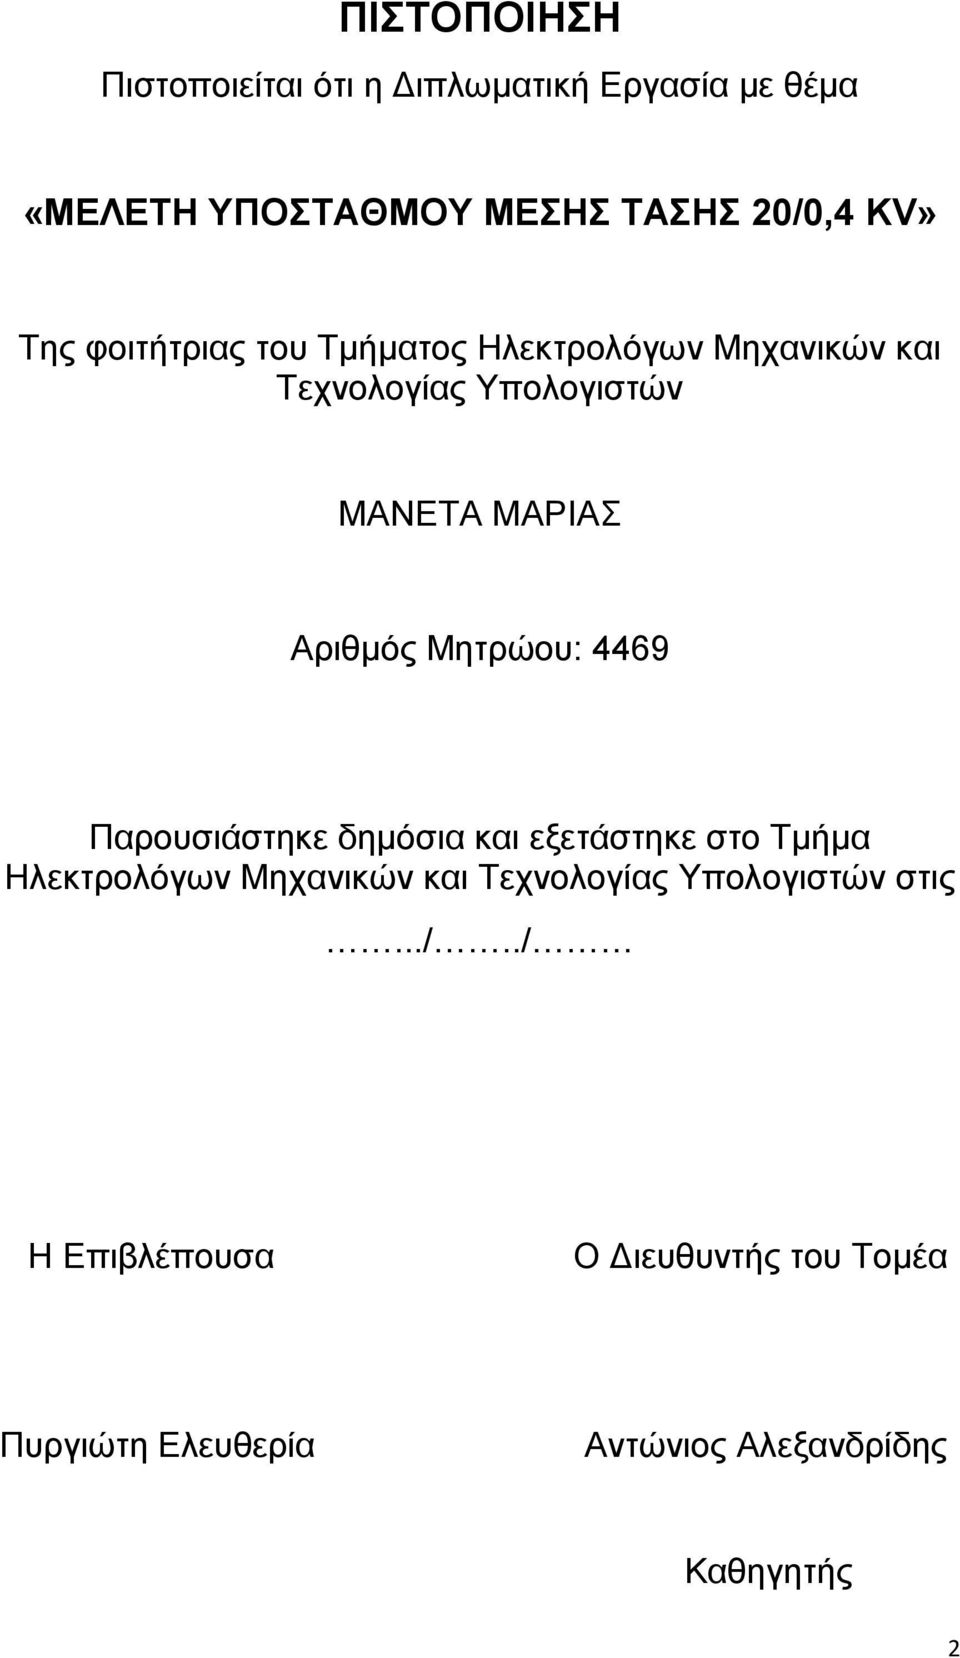 Μεηξψνπ: 4469 Παξνπζηάζηεθε δεκφζηα θαη εμεηάζηεθε ζην Σκήκα Ζιεθηξνιφγσλ Μεραληθψλ θαη Σερλνινγίαο